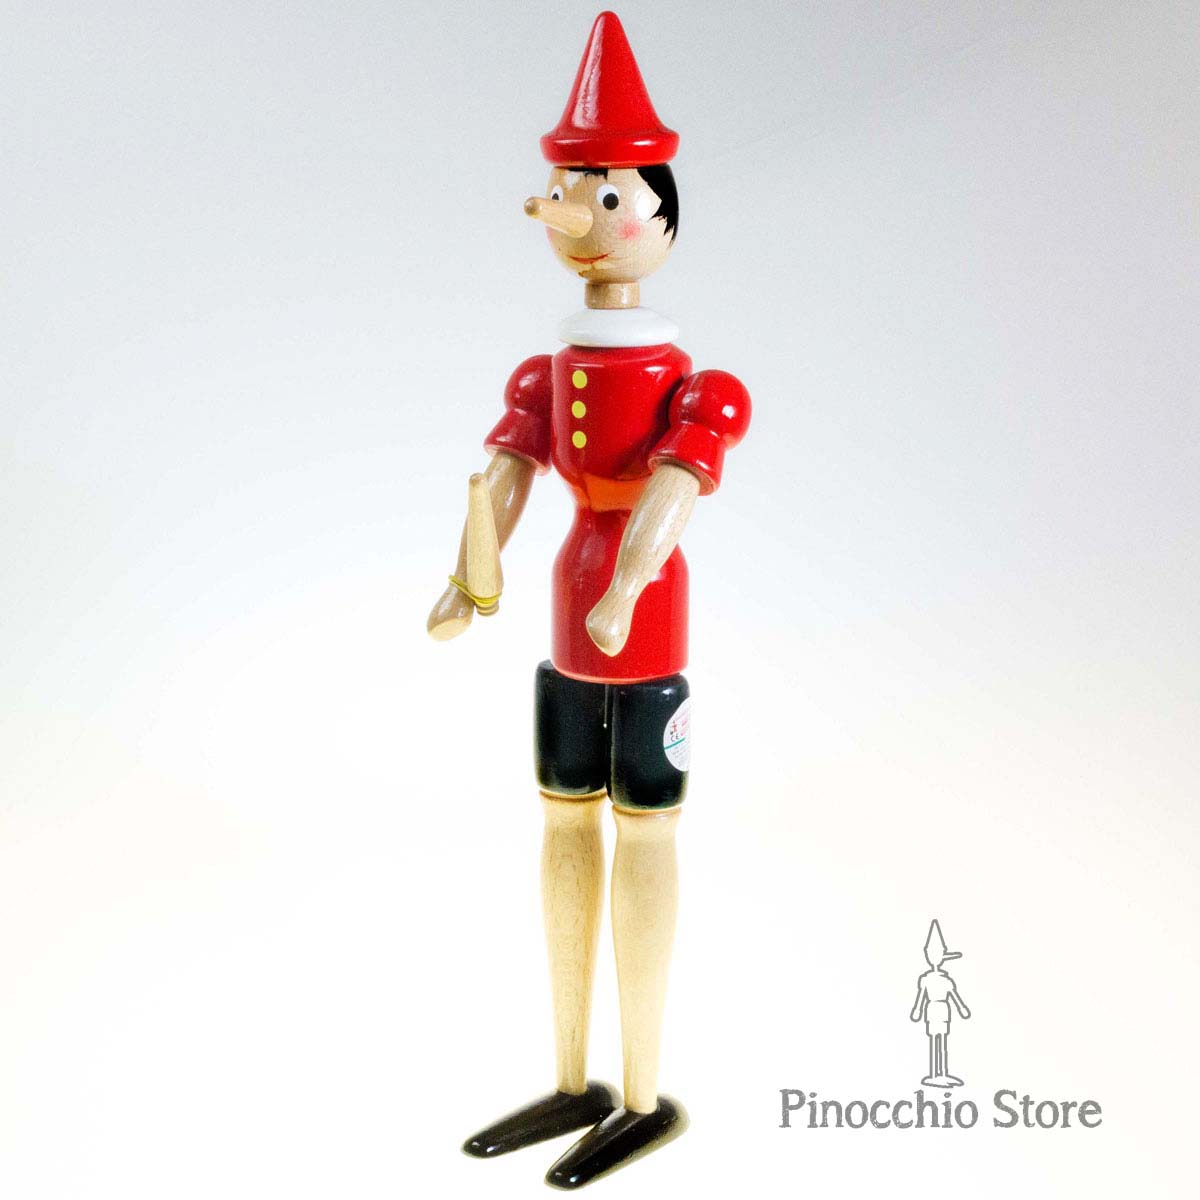 Pinocchio Classico di legno - Divertente burattino giocattolo per bambini